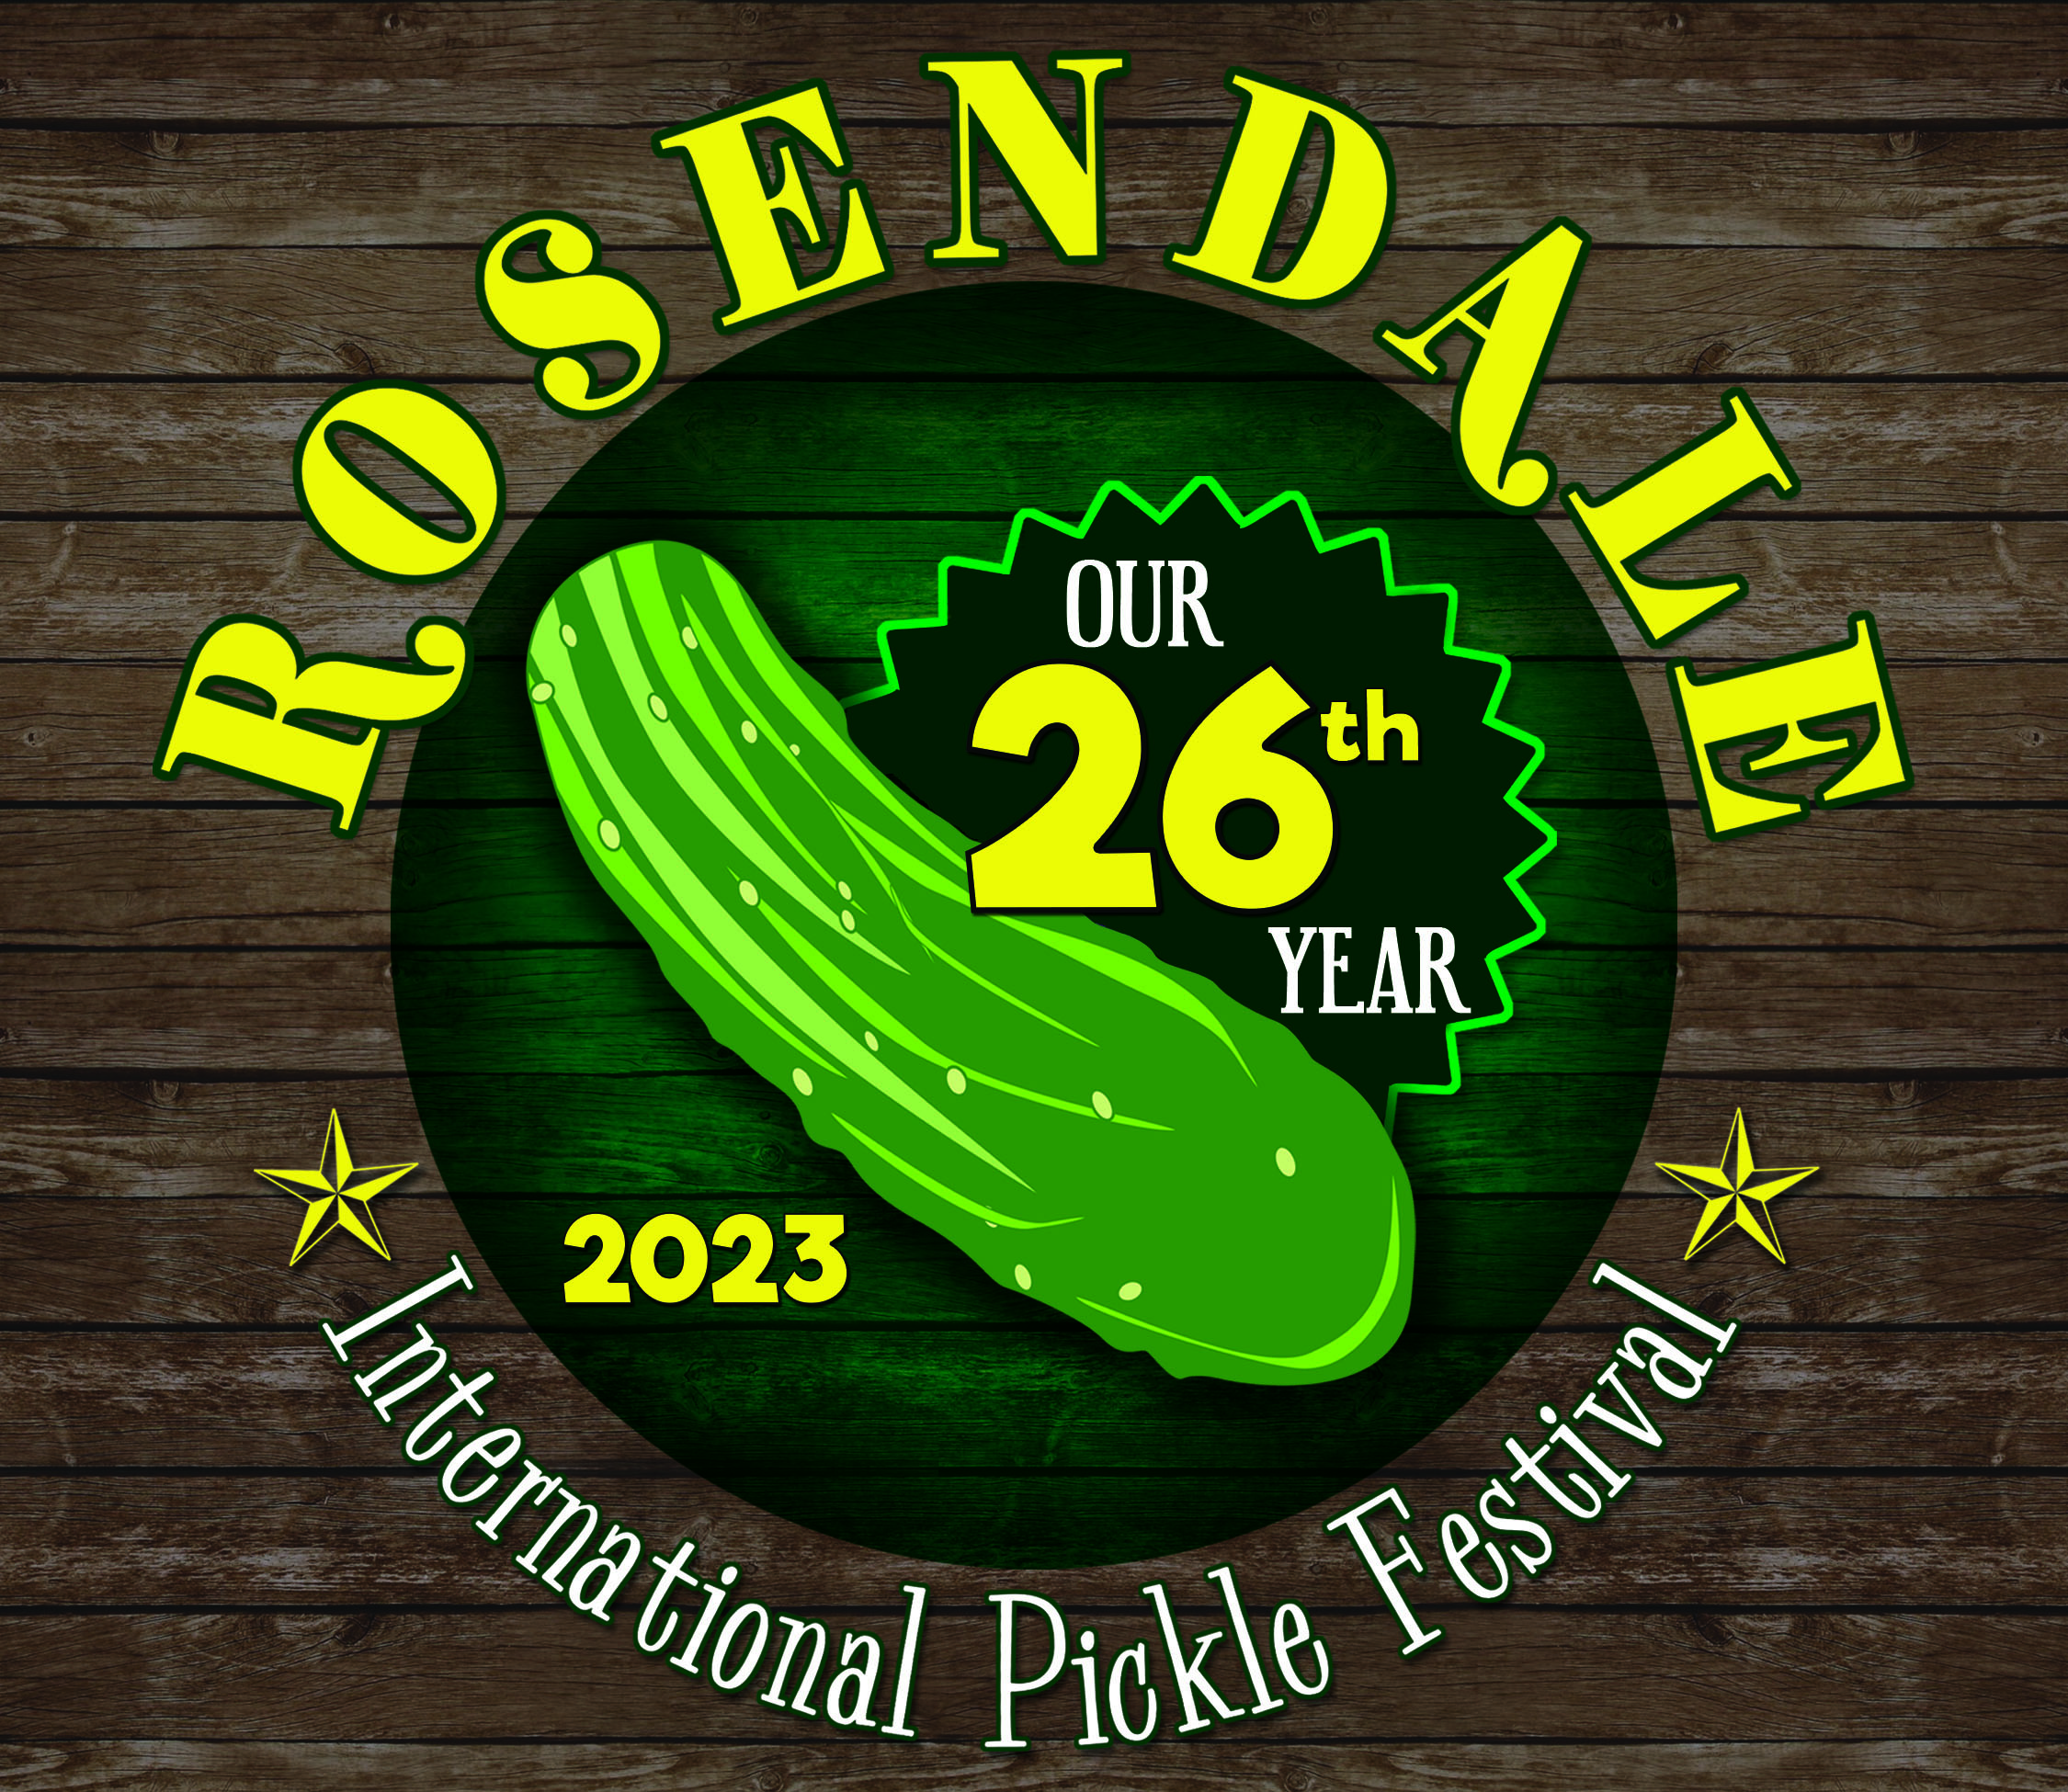  Vendors - Rosendale International Pickle Festival